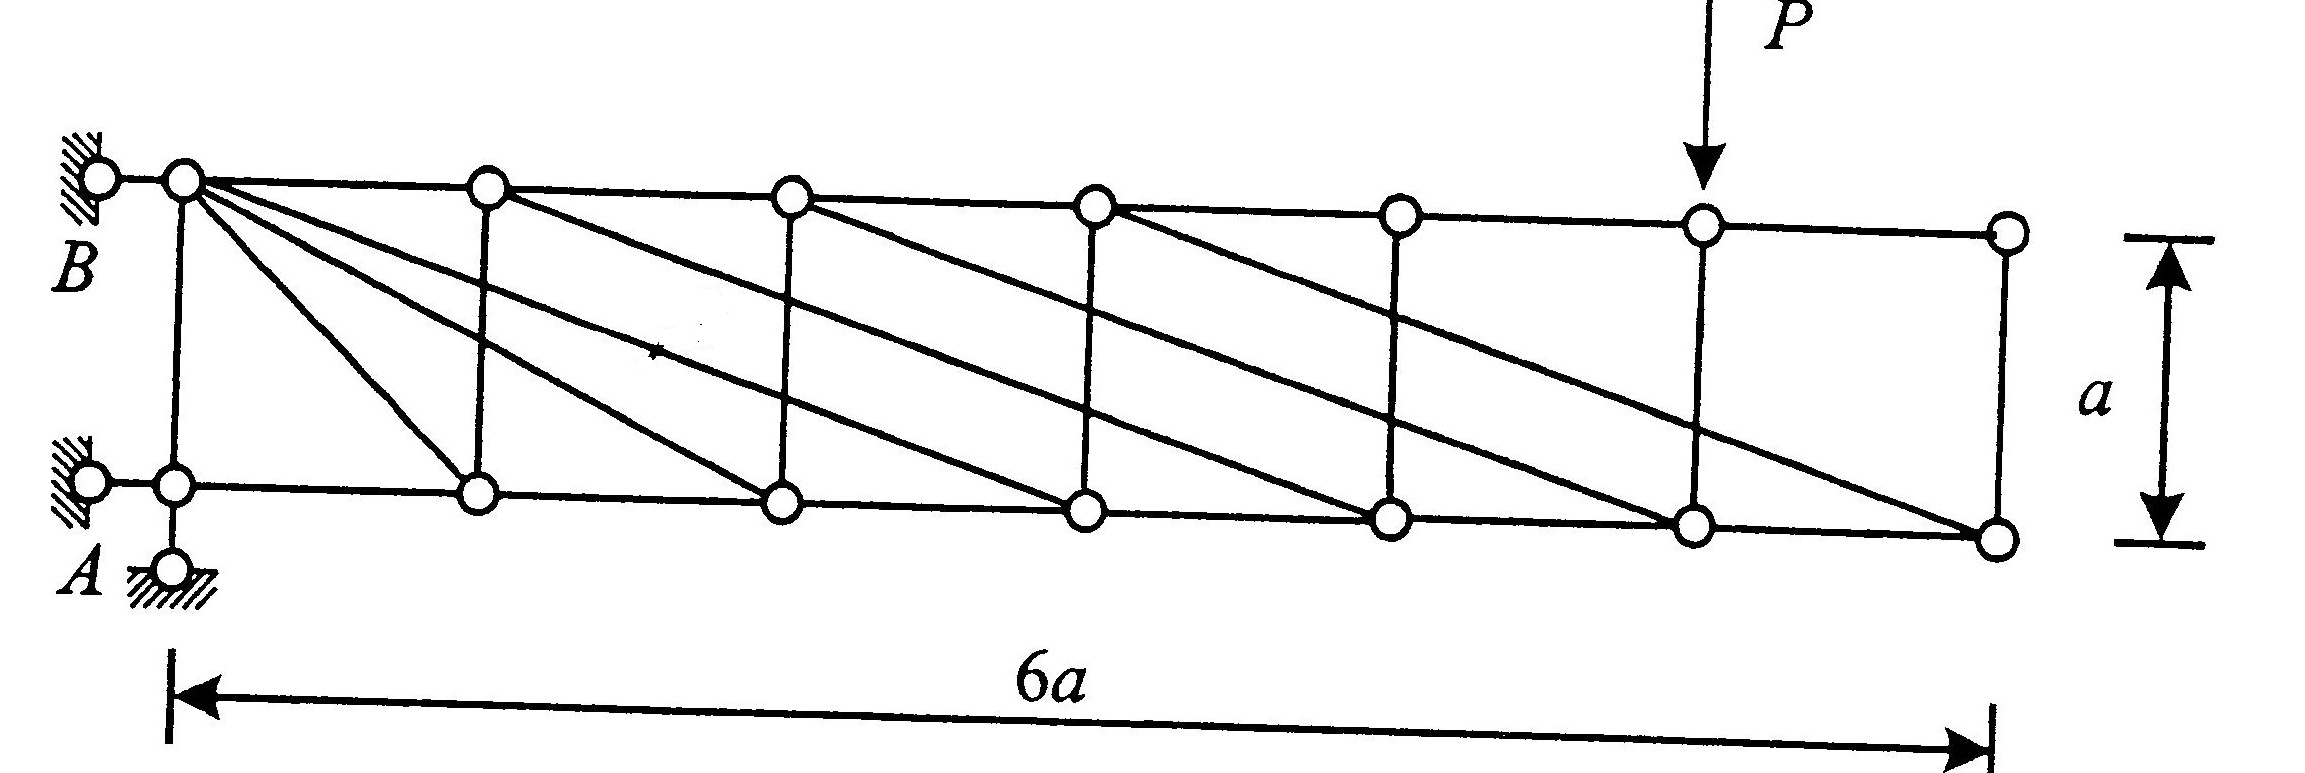 图示桁架中,零杆的数量为( ).